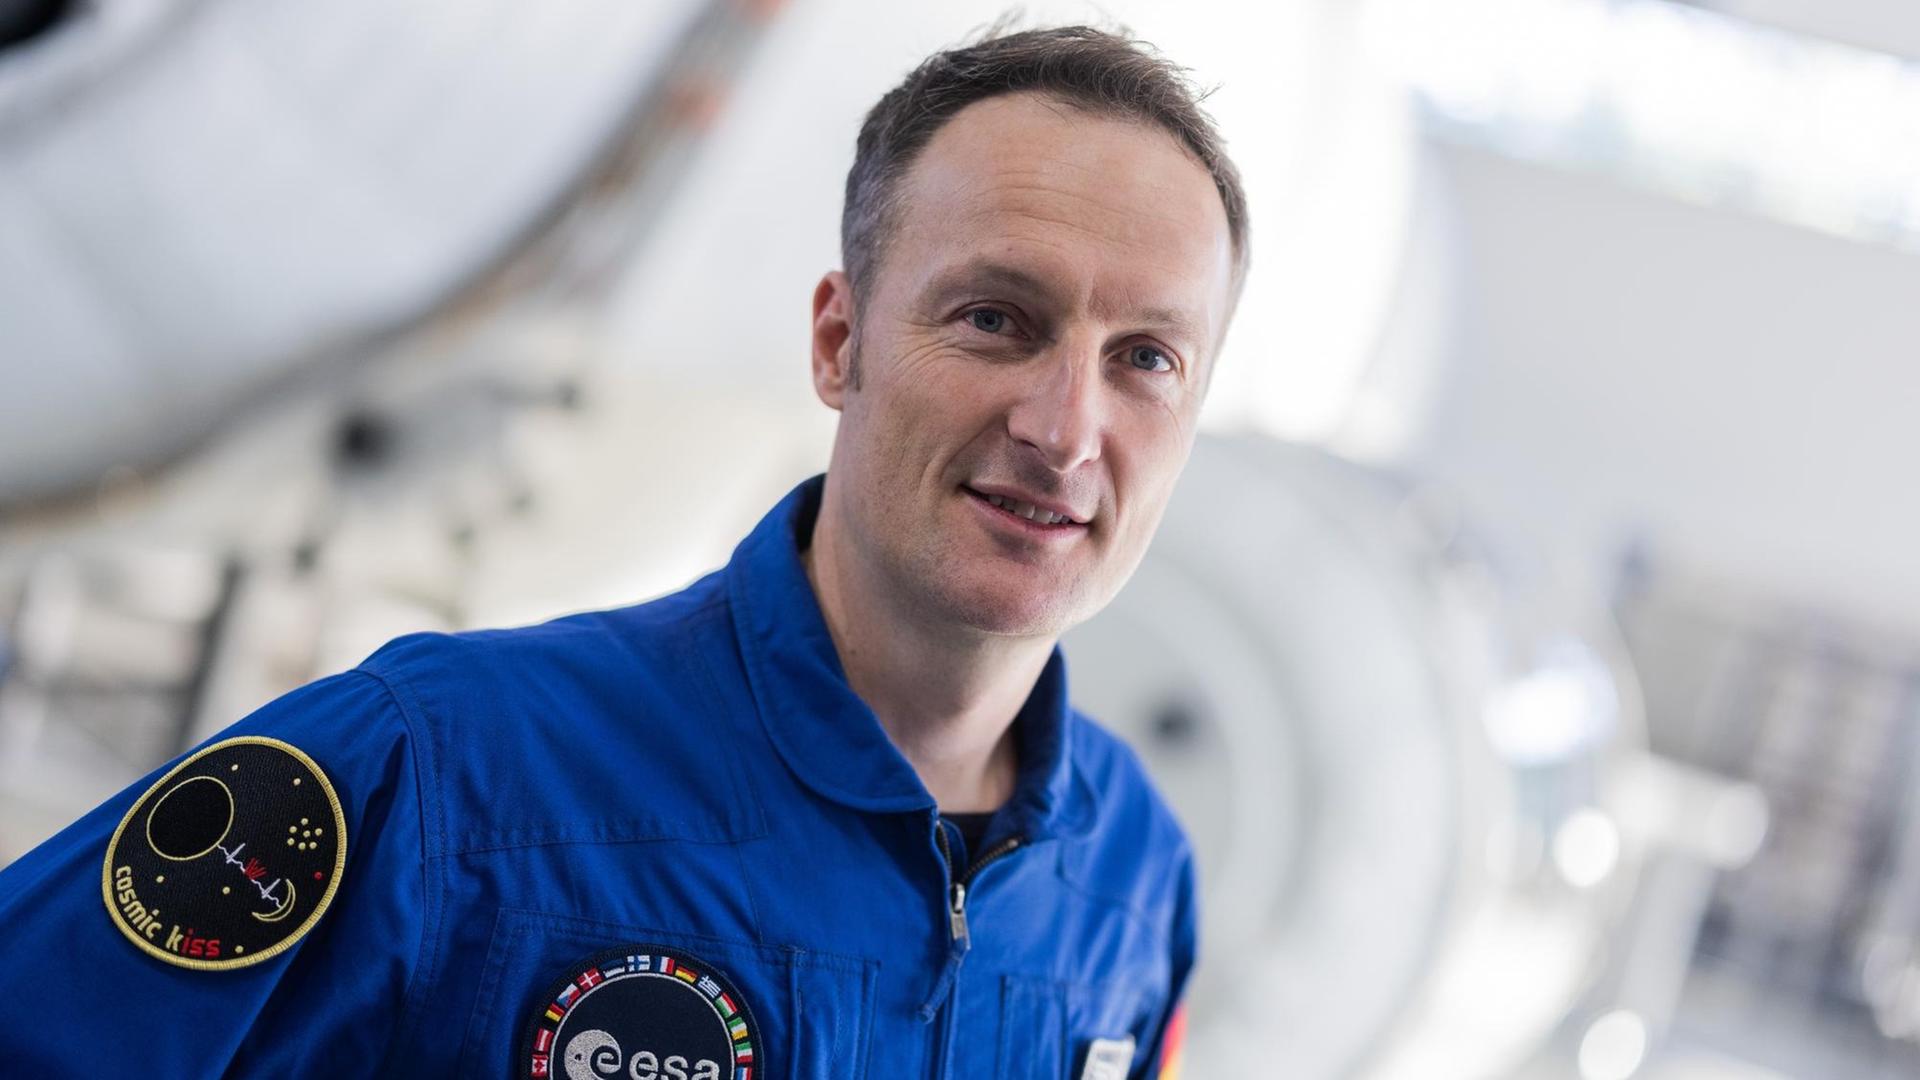 Matthias Maurer, deutscher Astronaut, steht vor einer Pressekonferenz im Europäischen Astronautenzentrum (EAC) der ESA vor seinem Start der Mission "cosmic kiss" zur Internationalen Raumstation ISS in der Trainingshalle. Der gebürtige Saarländer wird der erste deutsche Astronaut sein, der an Bord einer SpaceX-Raumkapsel des kommerziellen Nasa-Crew-Programms zur ISS fliegt.